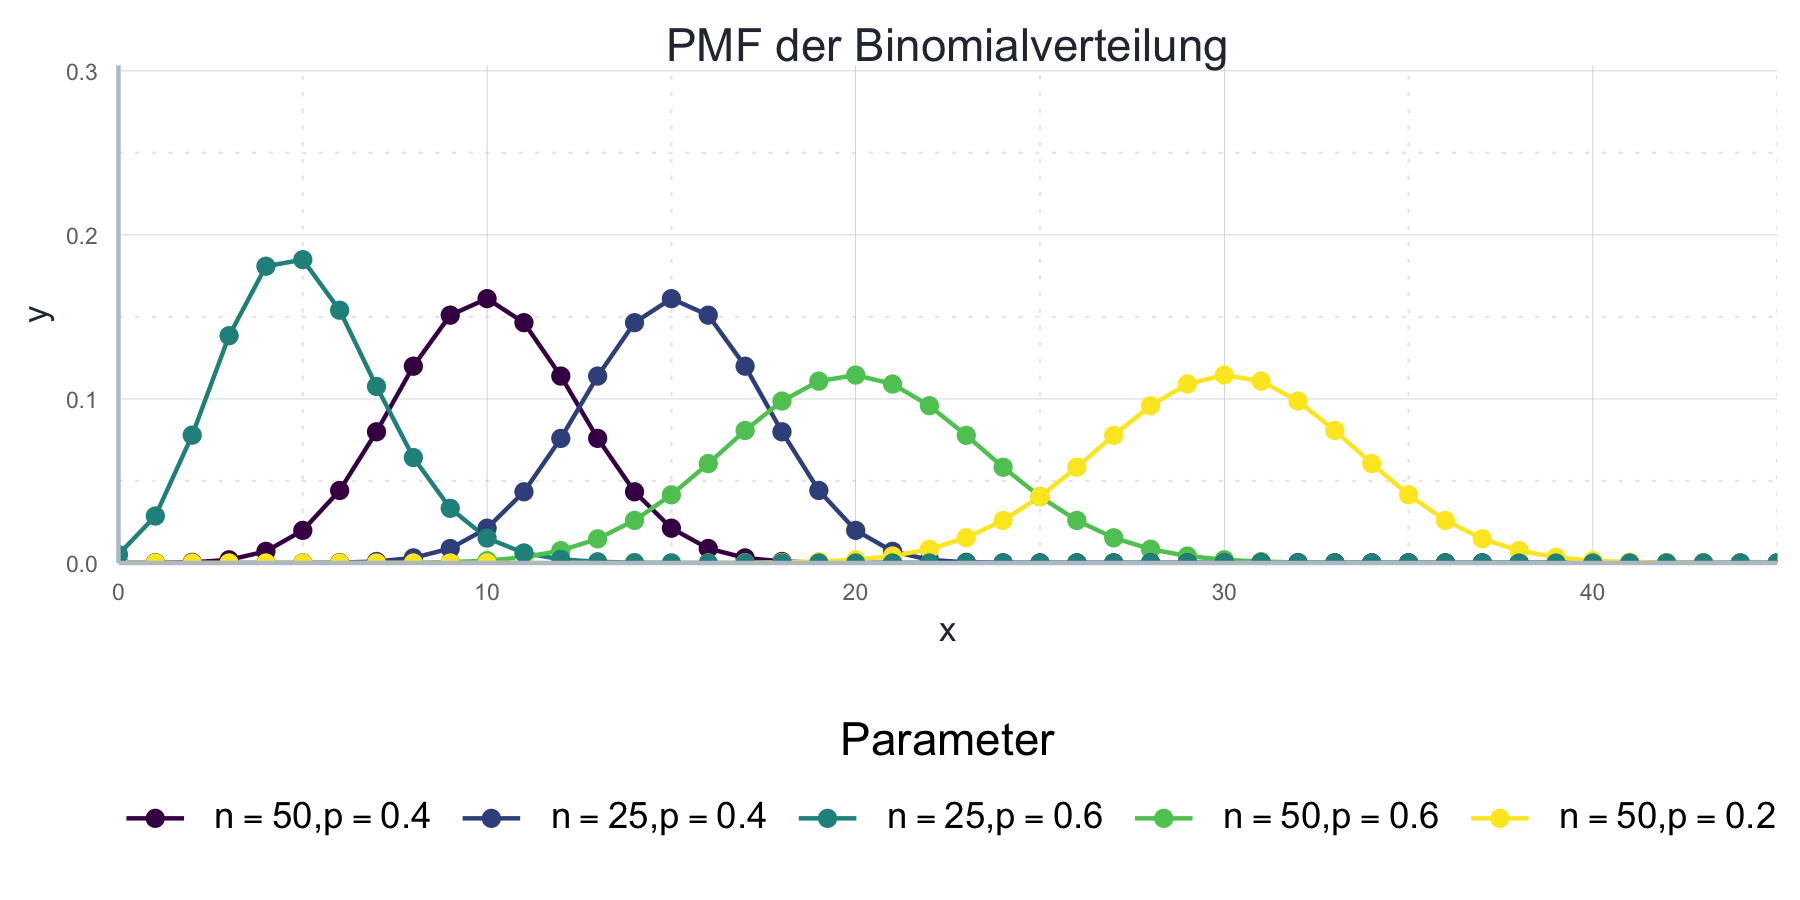 Die Wahrscheinlichkeitsverteilung der Binomialverteilung für verschiedene Parameterwerte.